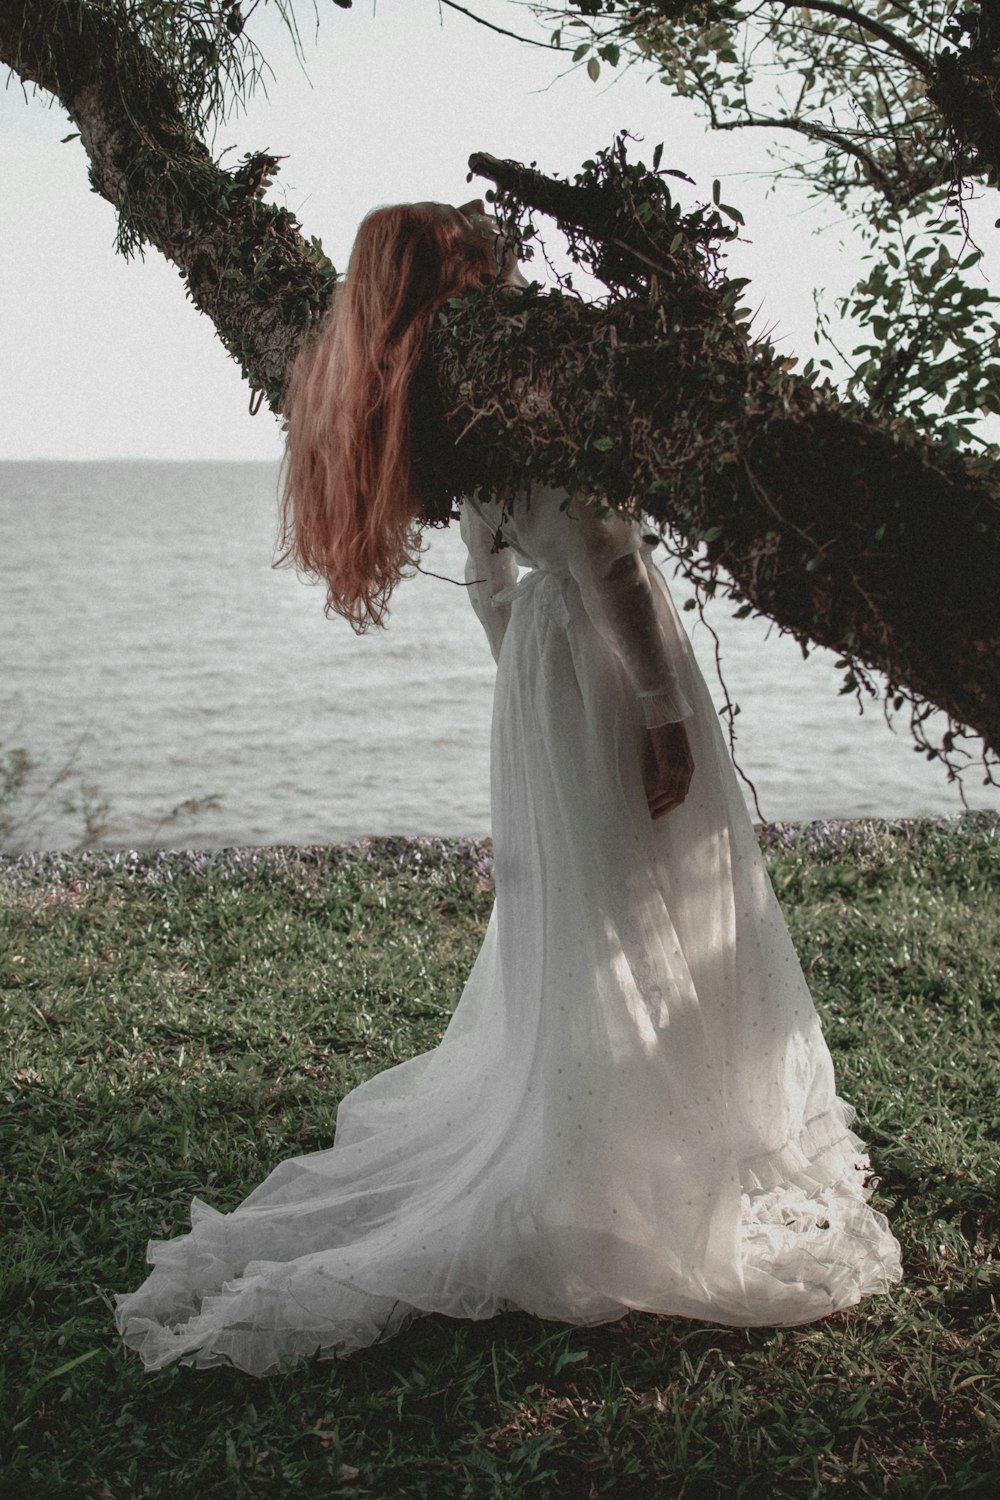 donna in abito da sposa bianco in piedi sul campo di erba verde vicino allo specchio d'acqua durante il giorno